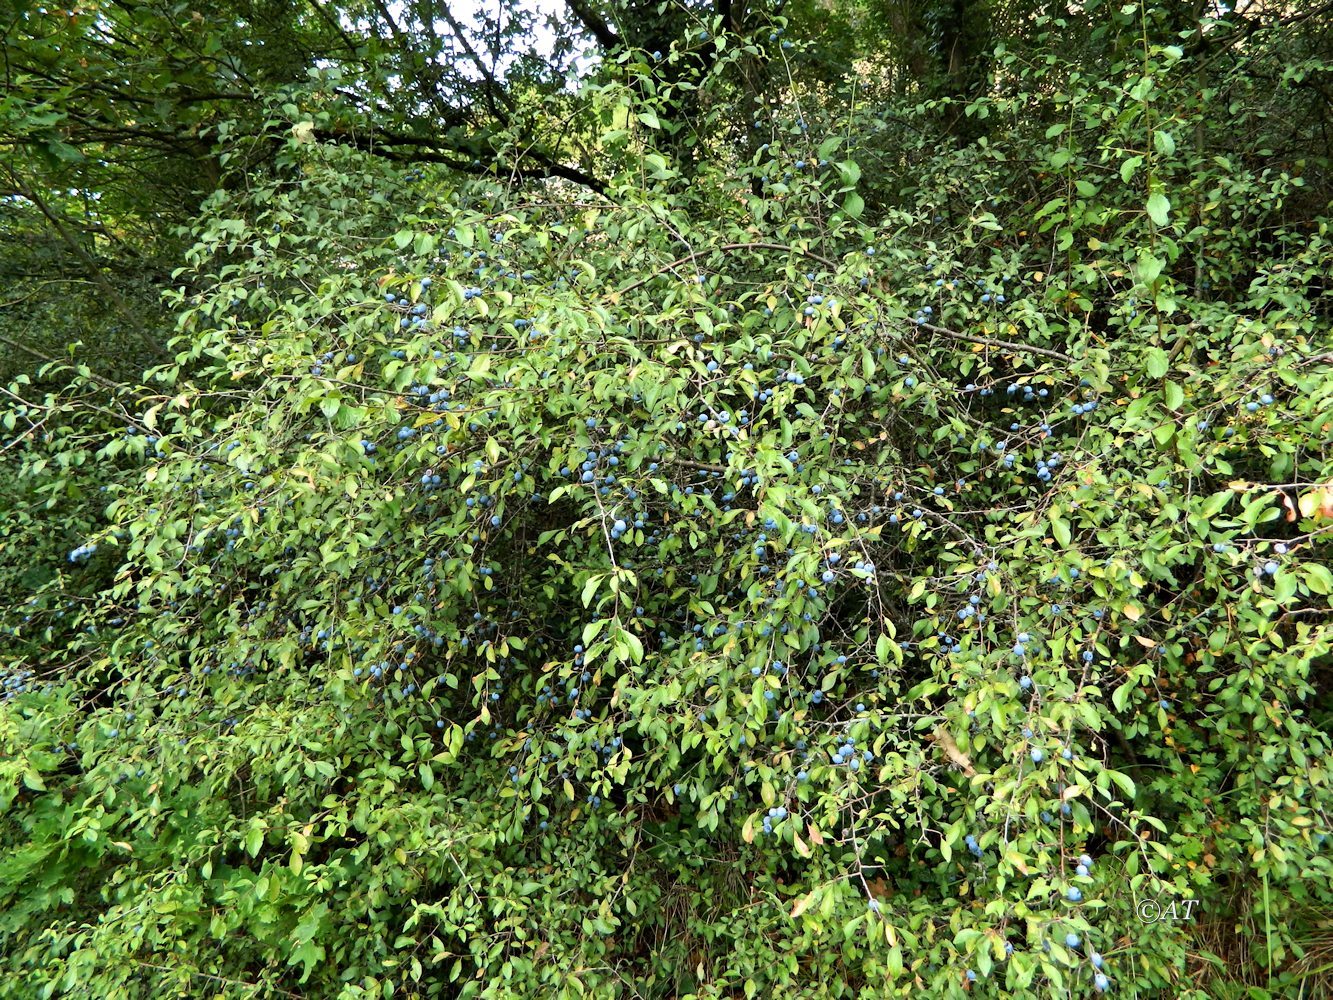 Image of genus Prunus specimen.